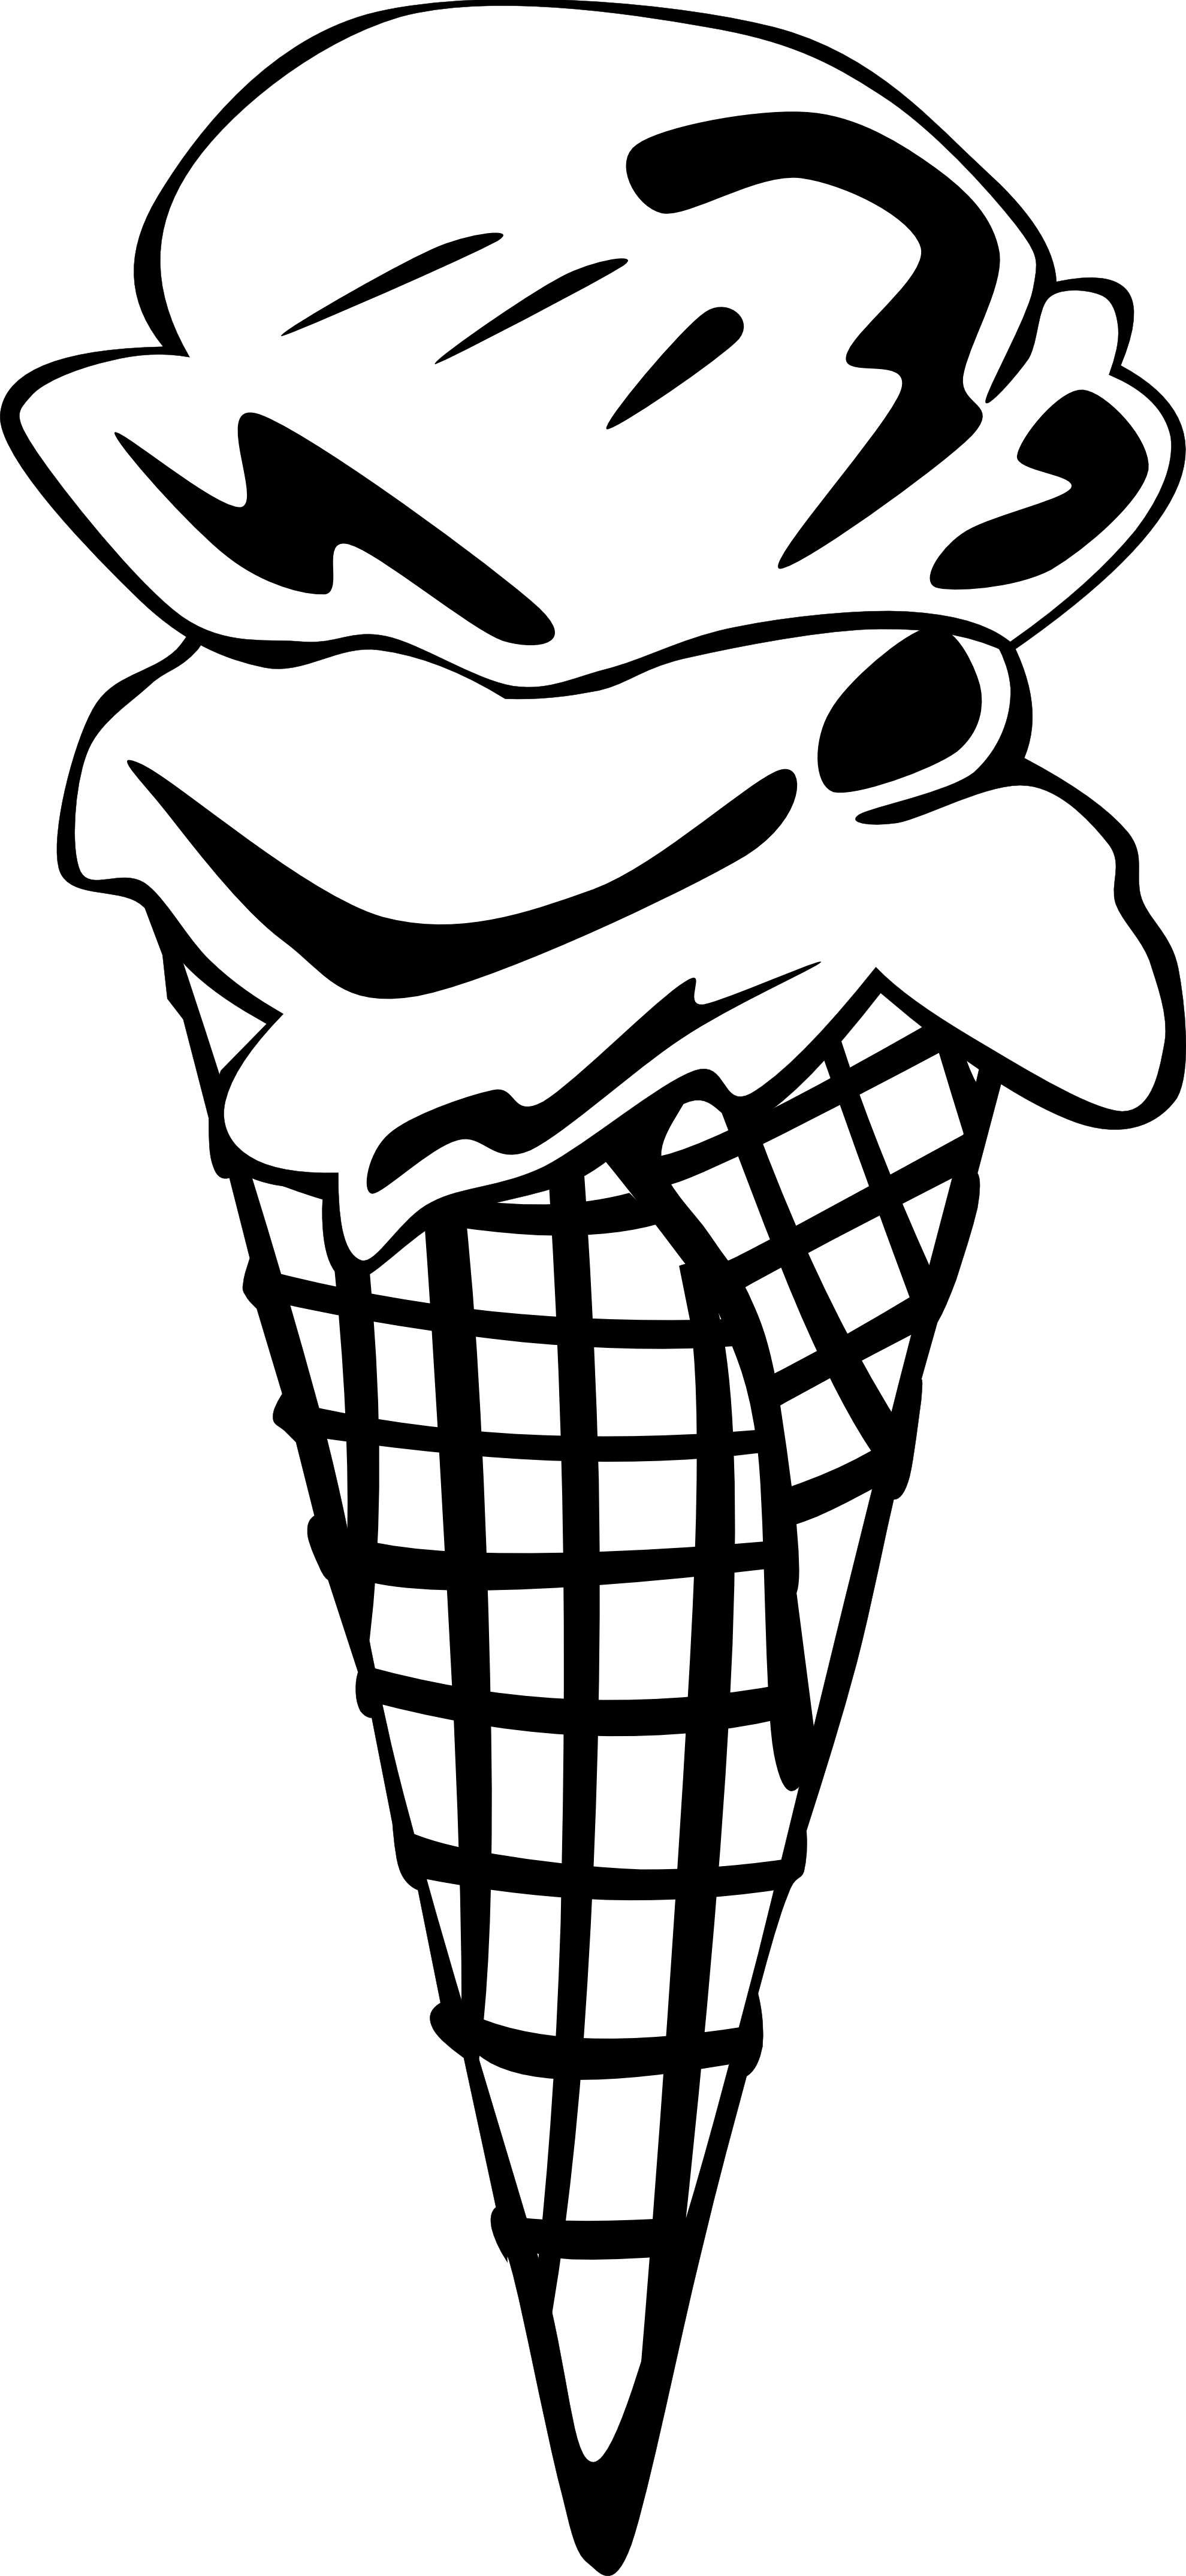 ice cream cone clipart black and white - photo #25